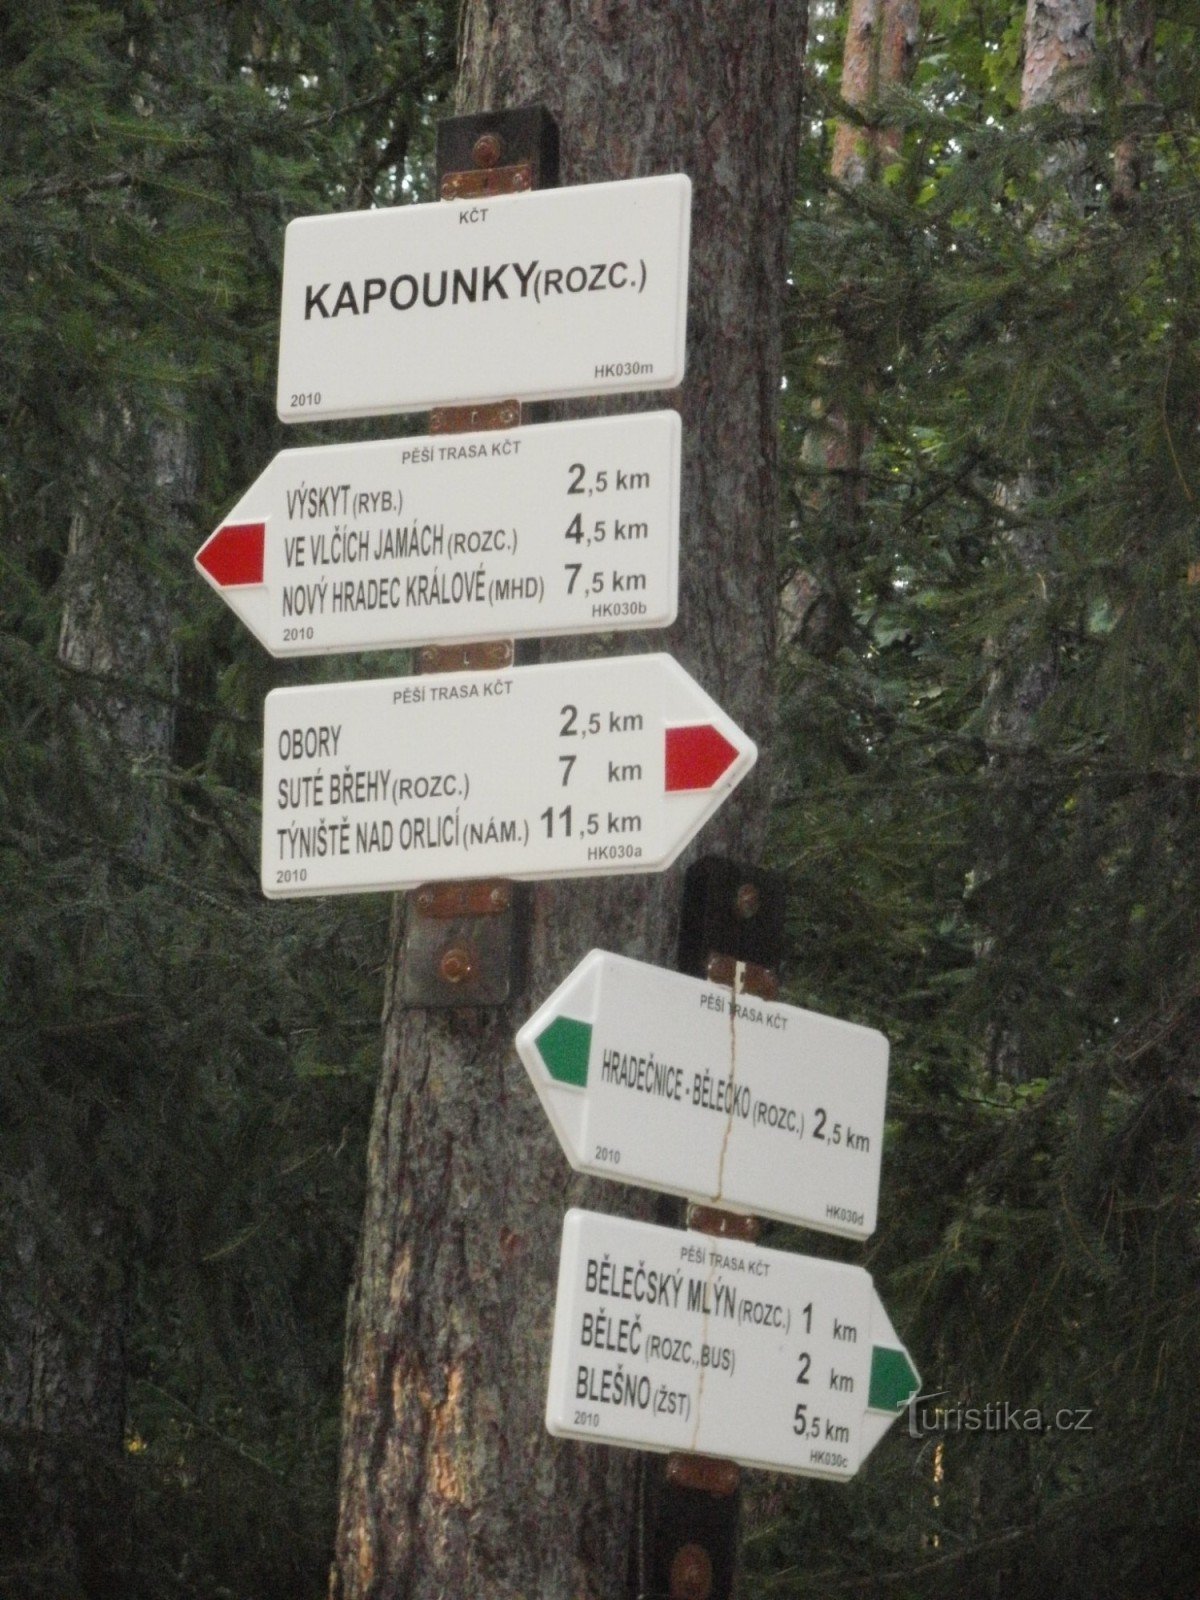 Crossroads Kapounky - Hradecké lesy